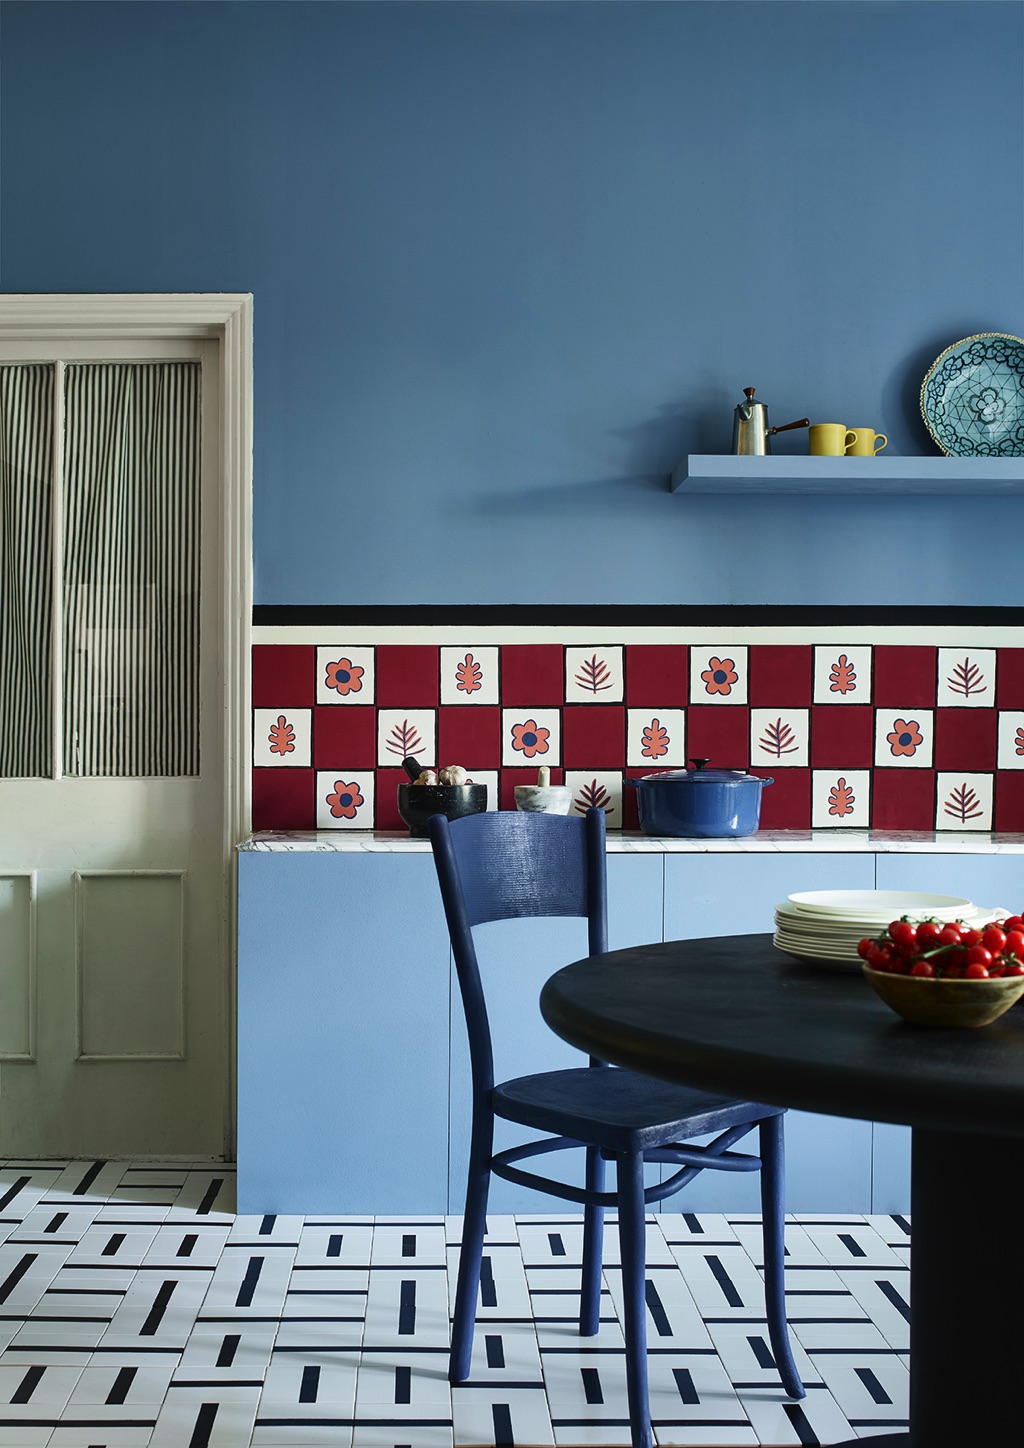 In dieser Küche bildet Blau den Schwerpunkt. Der Raum wirkt fast wie aus Großmutters Zeiten mit dem bewusst nostalgischen Design. Die Farbe ist von Annie Sloan.